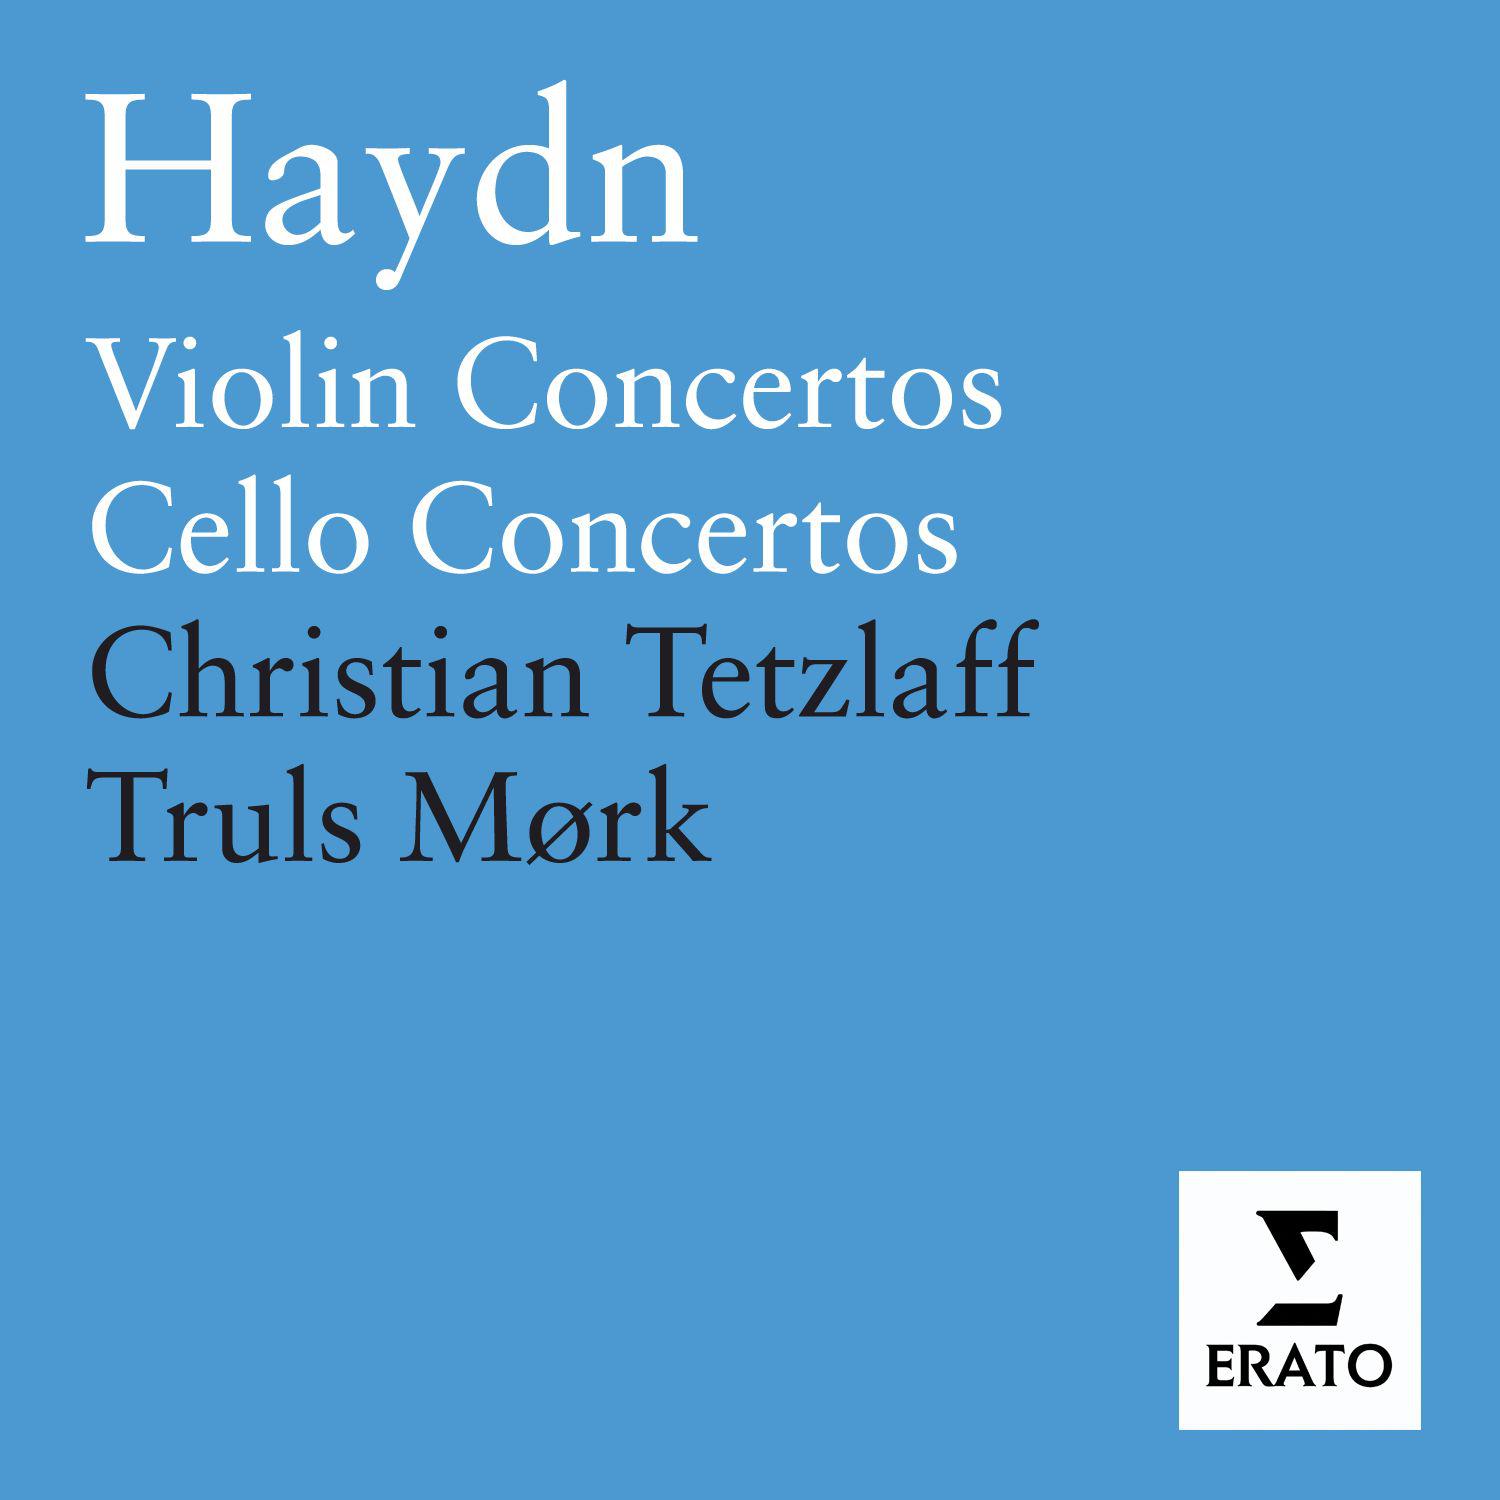 Violin Concerto in G Major, Hob. VIIa/4: I. Allegro moderato